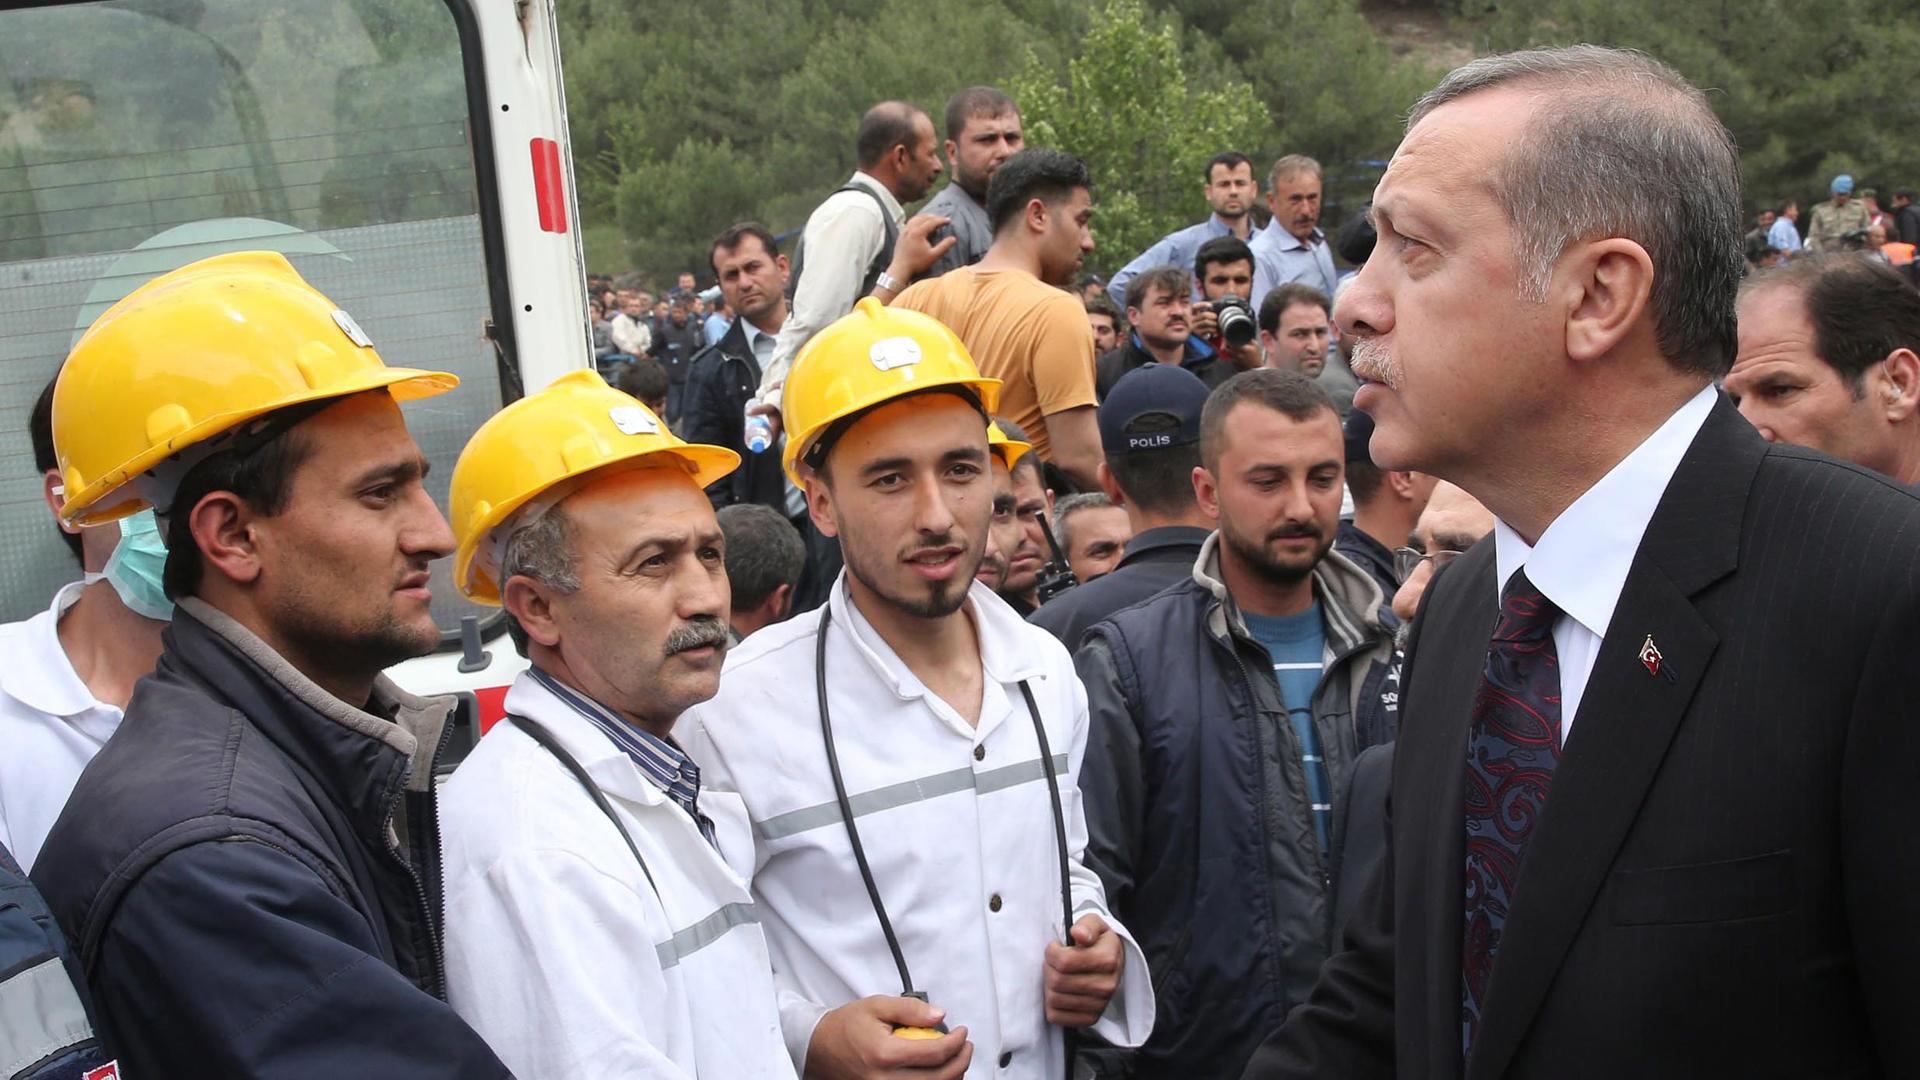 Der türkische Ministerpräsident Recep Tayyip Erdogan spricht nach dem Grubenunglück in Soma mit Hilfskräften.